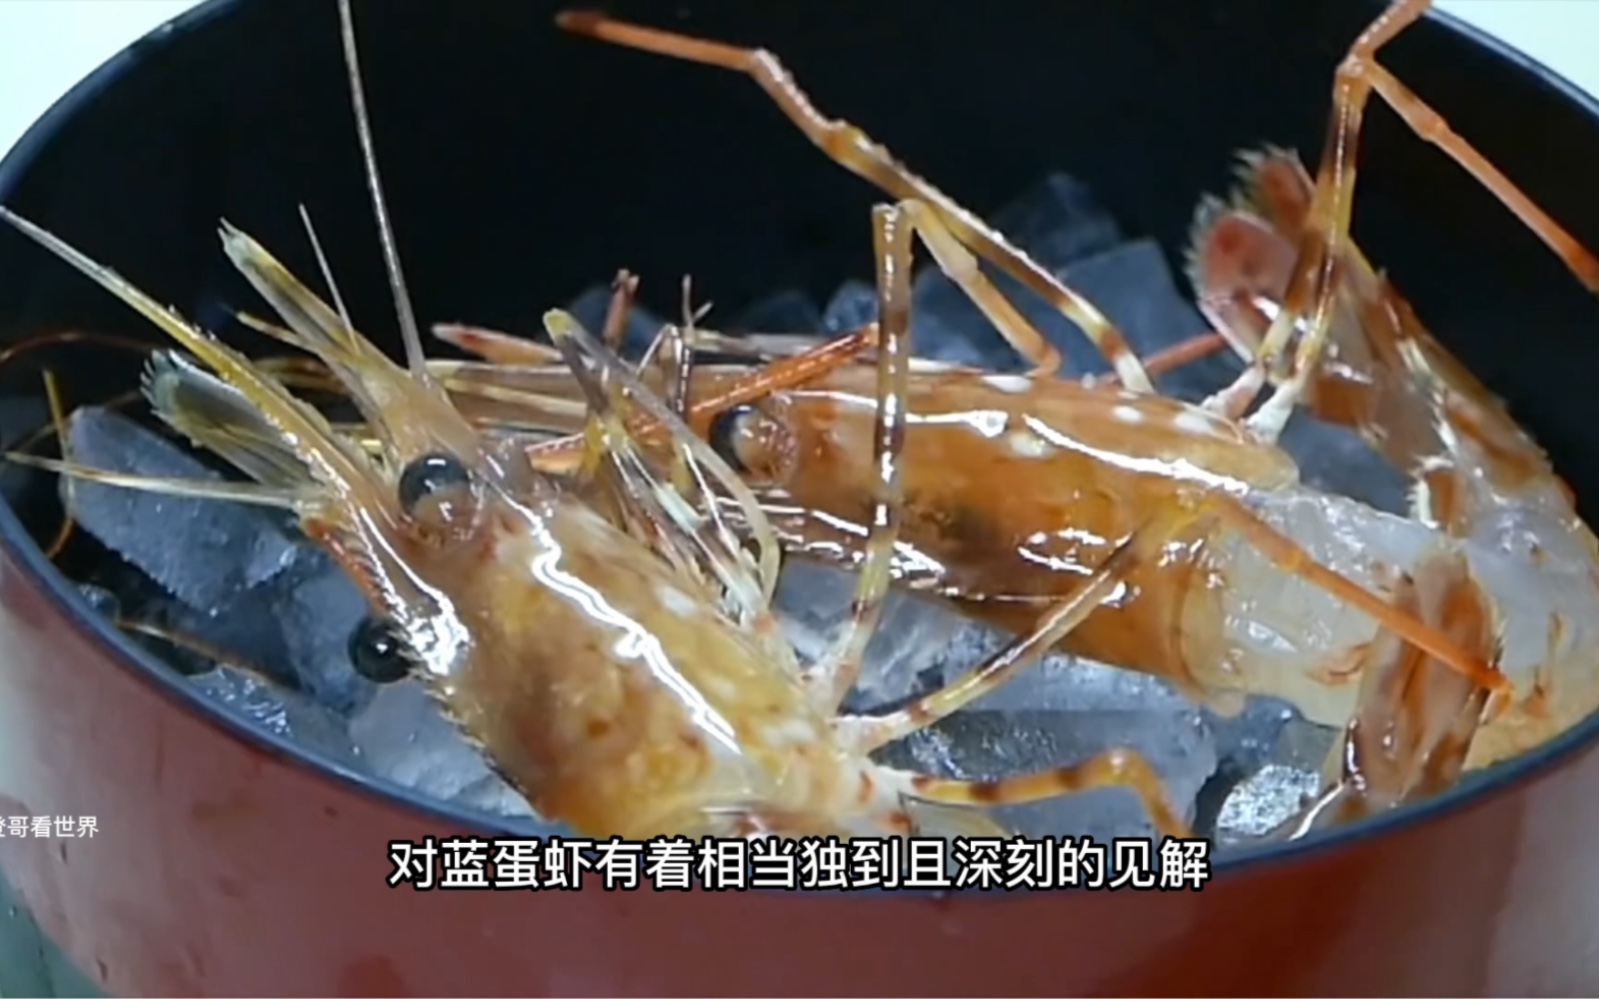 虾中的“劳斯莱斯”，每一只蓝蛋虾的处理必须在二十秒内完成，肉质无与伦比鲜甜